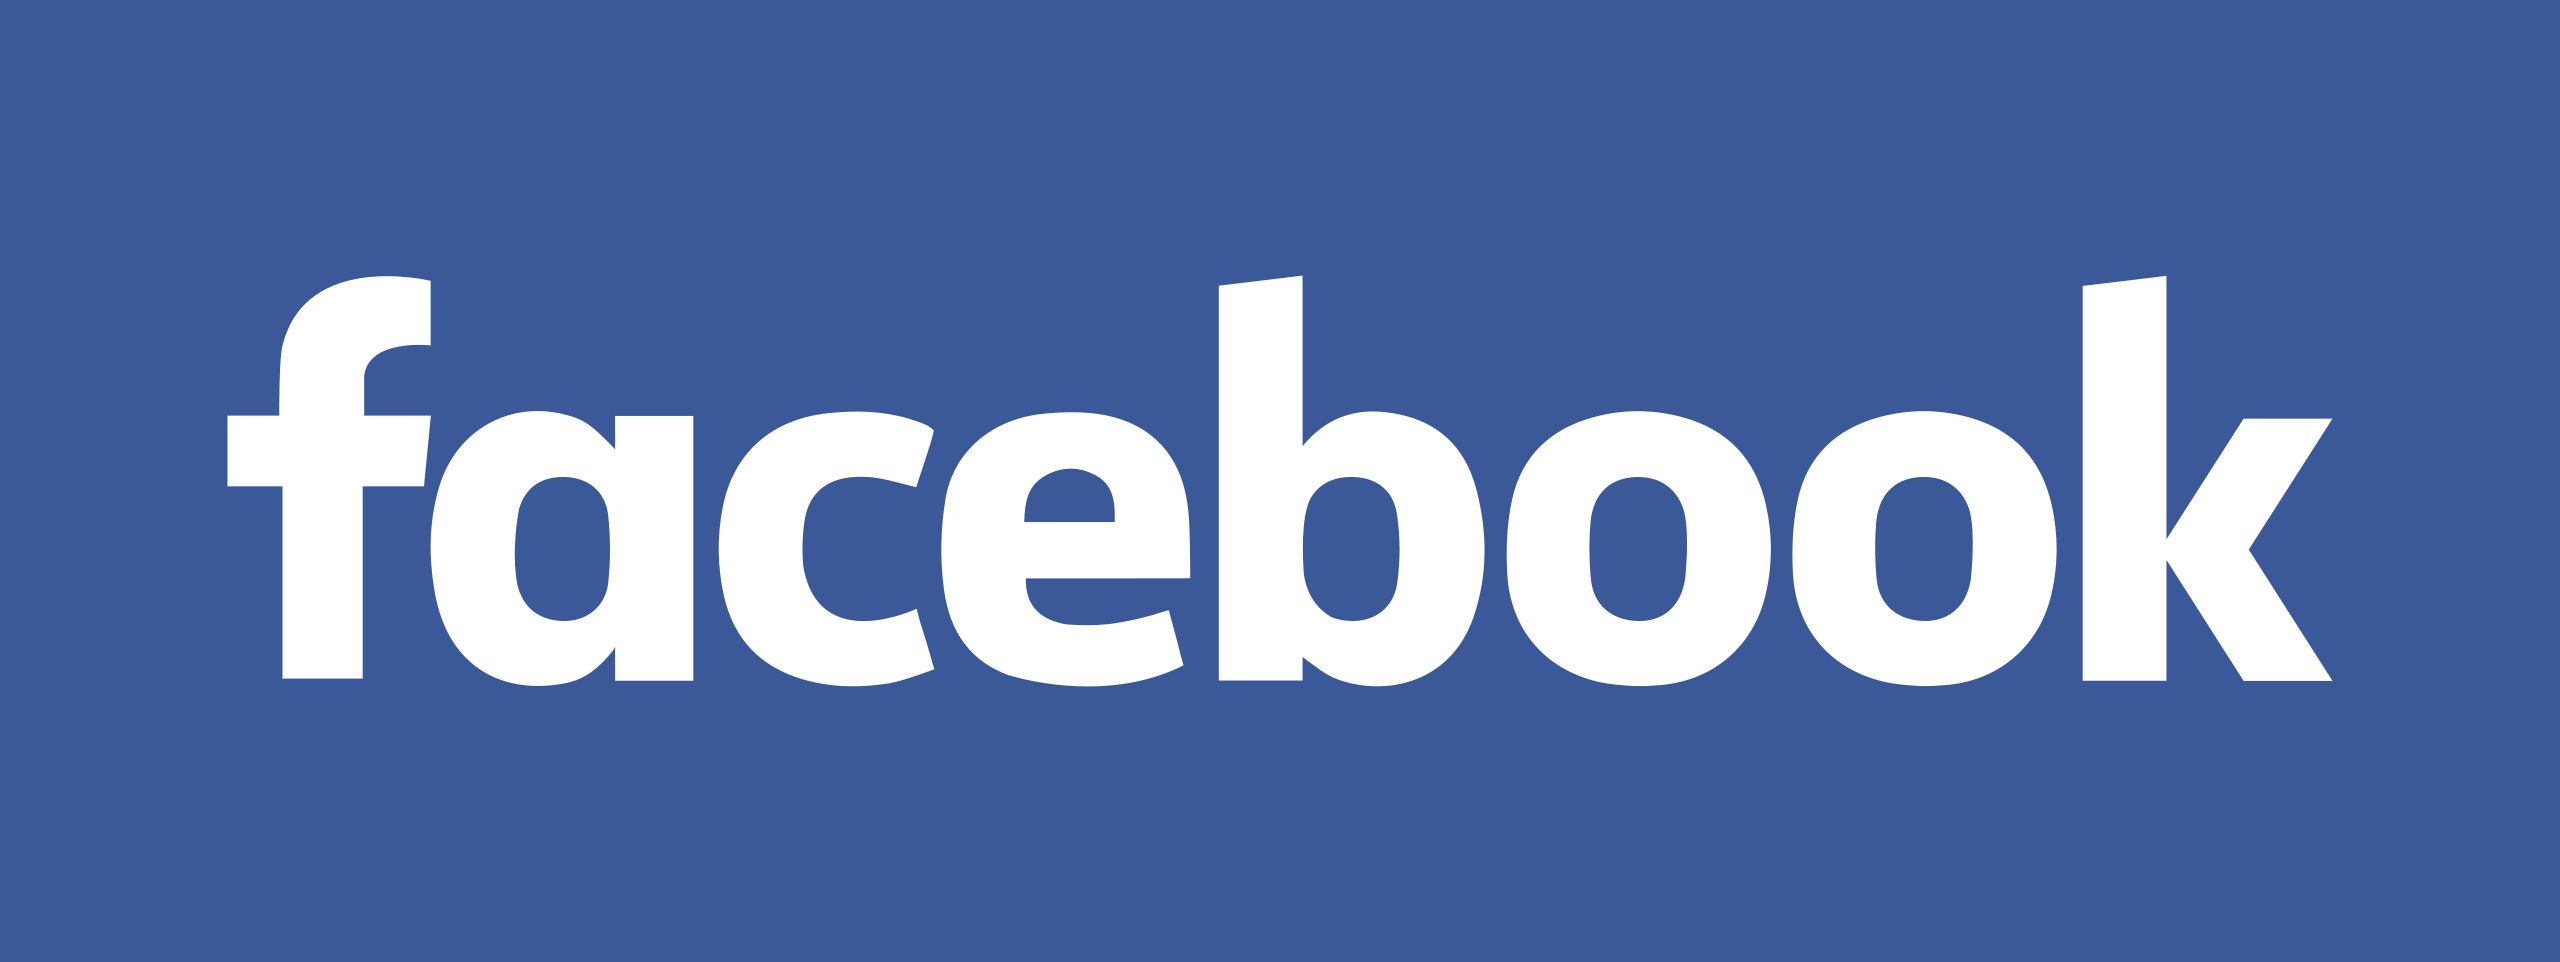 Russie: le régulateur de l’internet ordonne le blocage de Facebook dans le pays